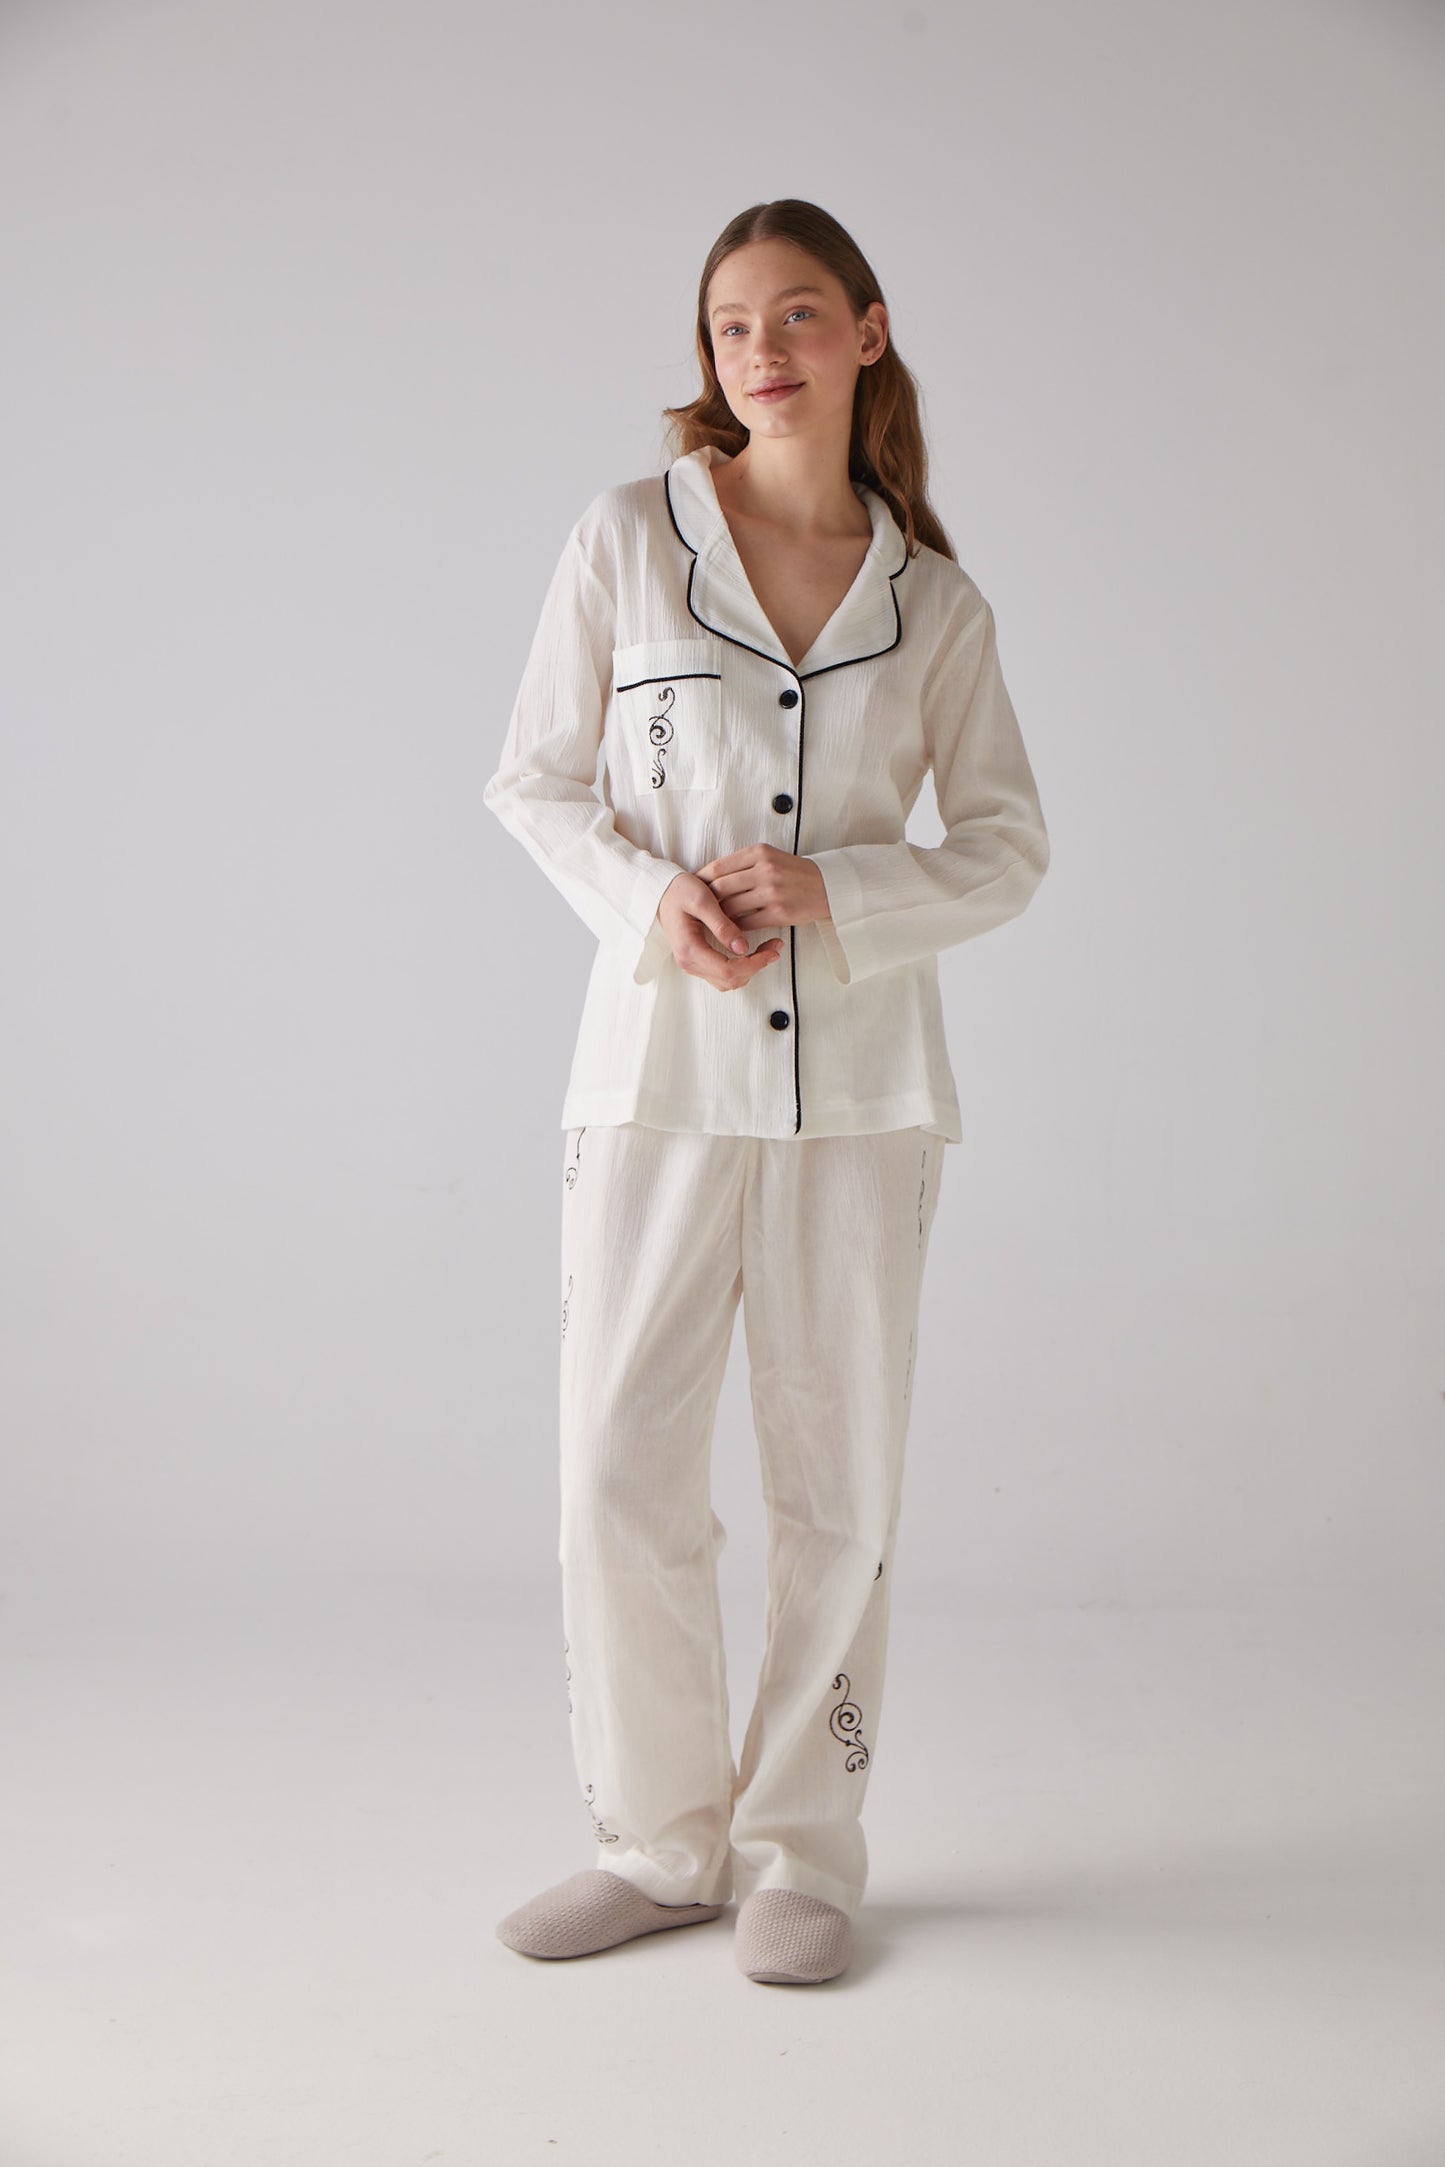 Clef Pattern White Long Pyjama Set - 100% Organic Cotton